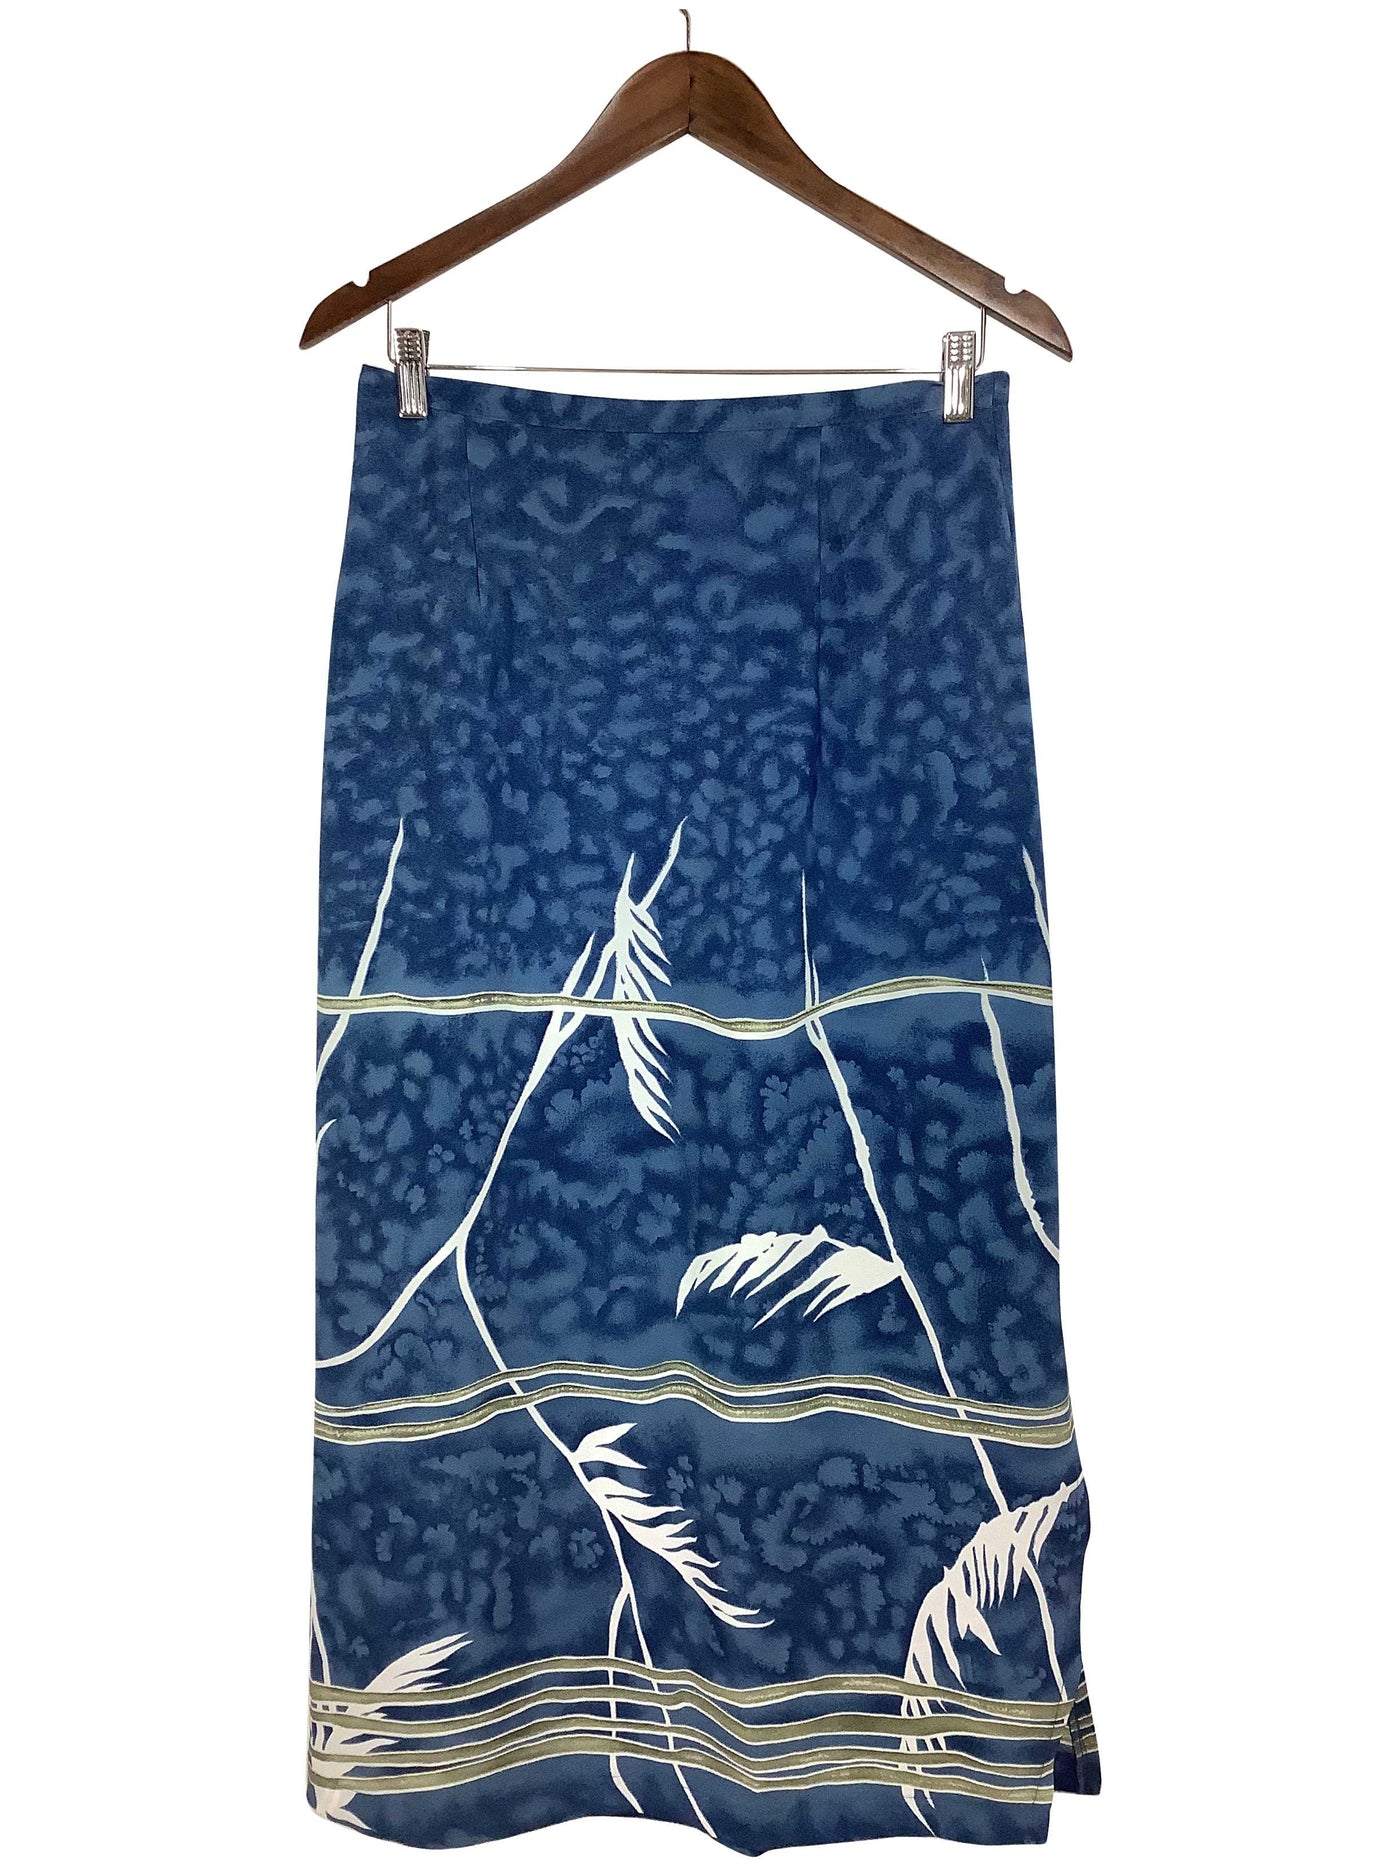 TRADITION Regular fit Skirt in Blue - Size 10 | 13.25 $ KOOP